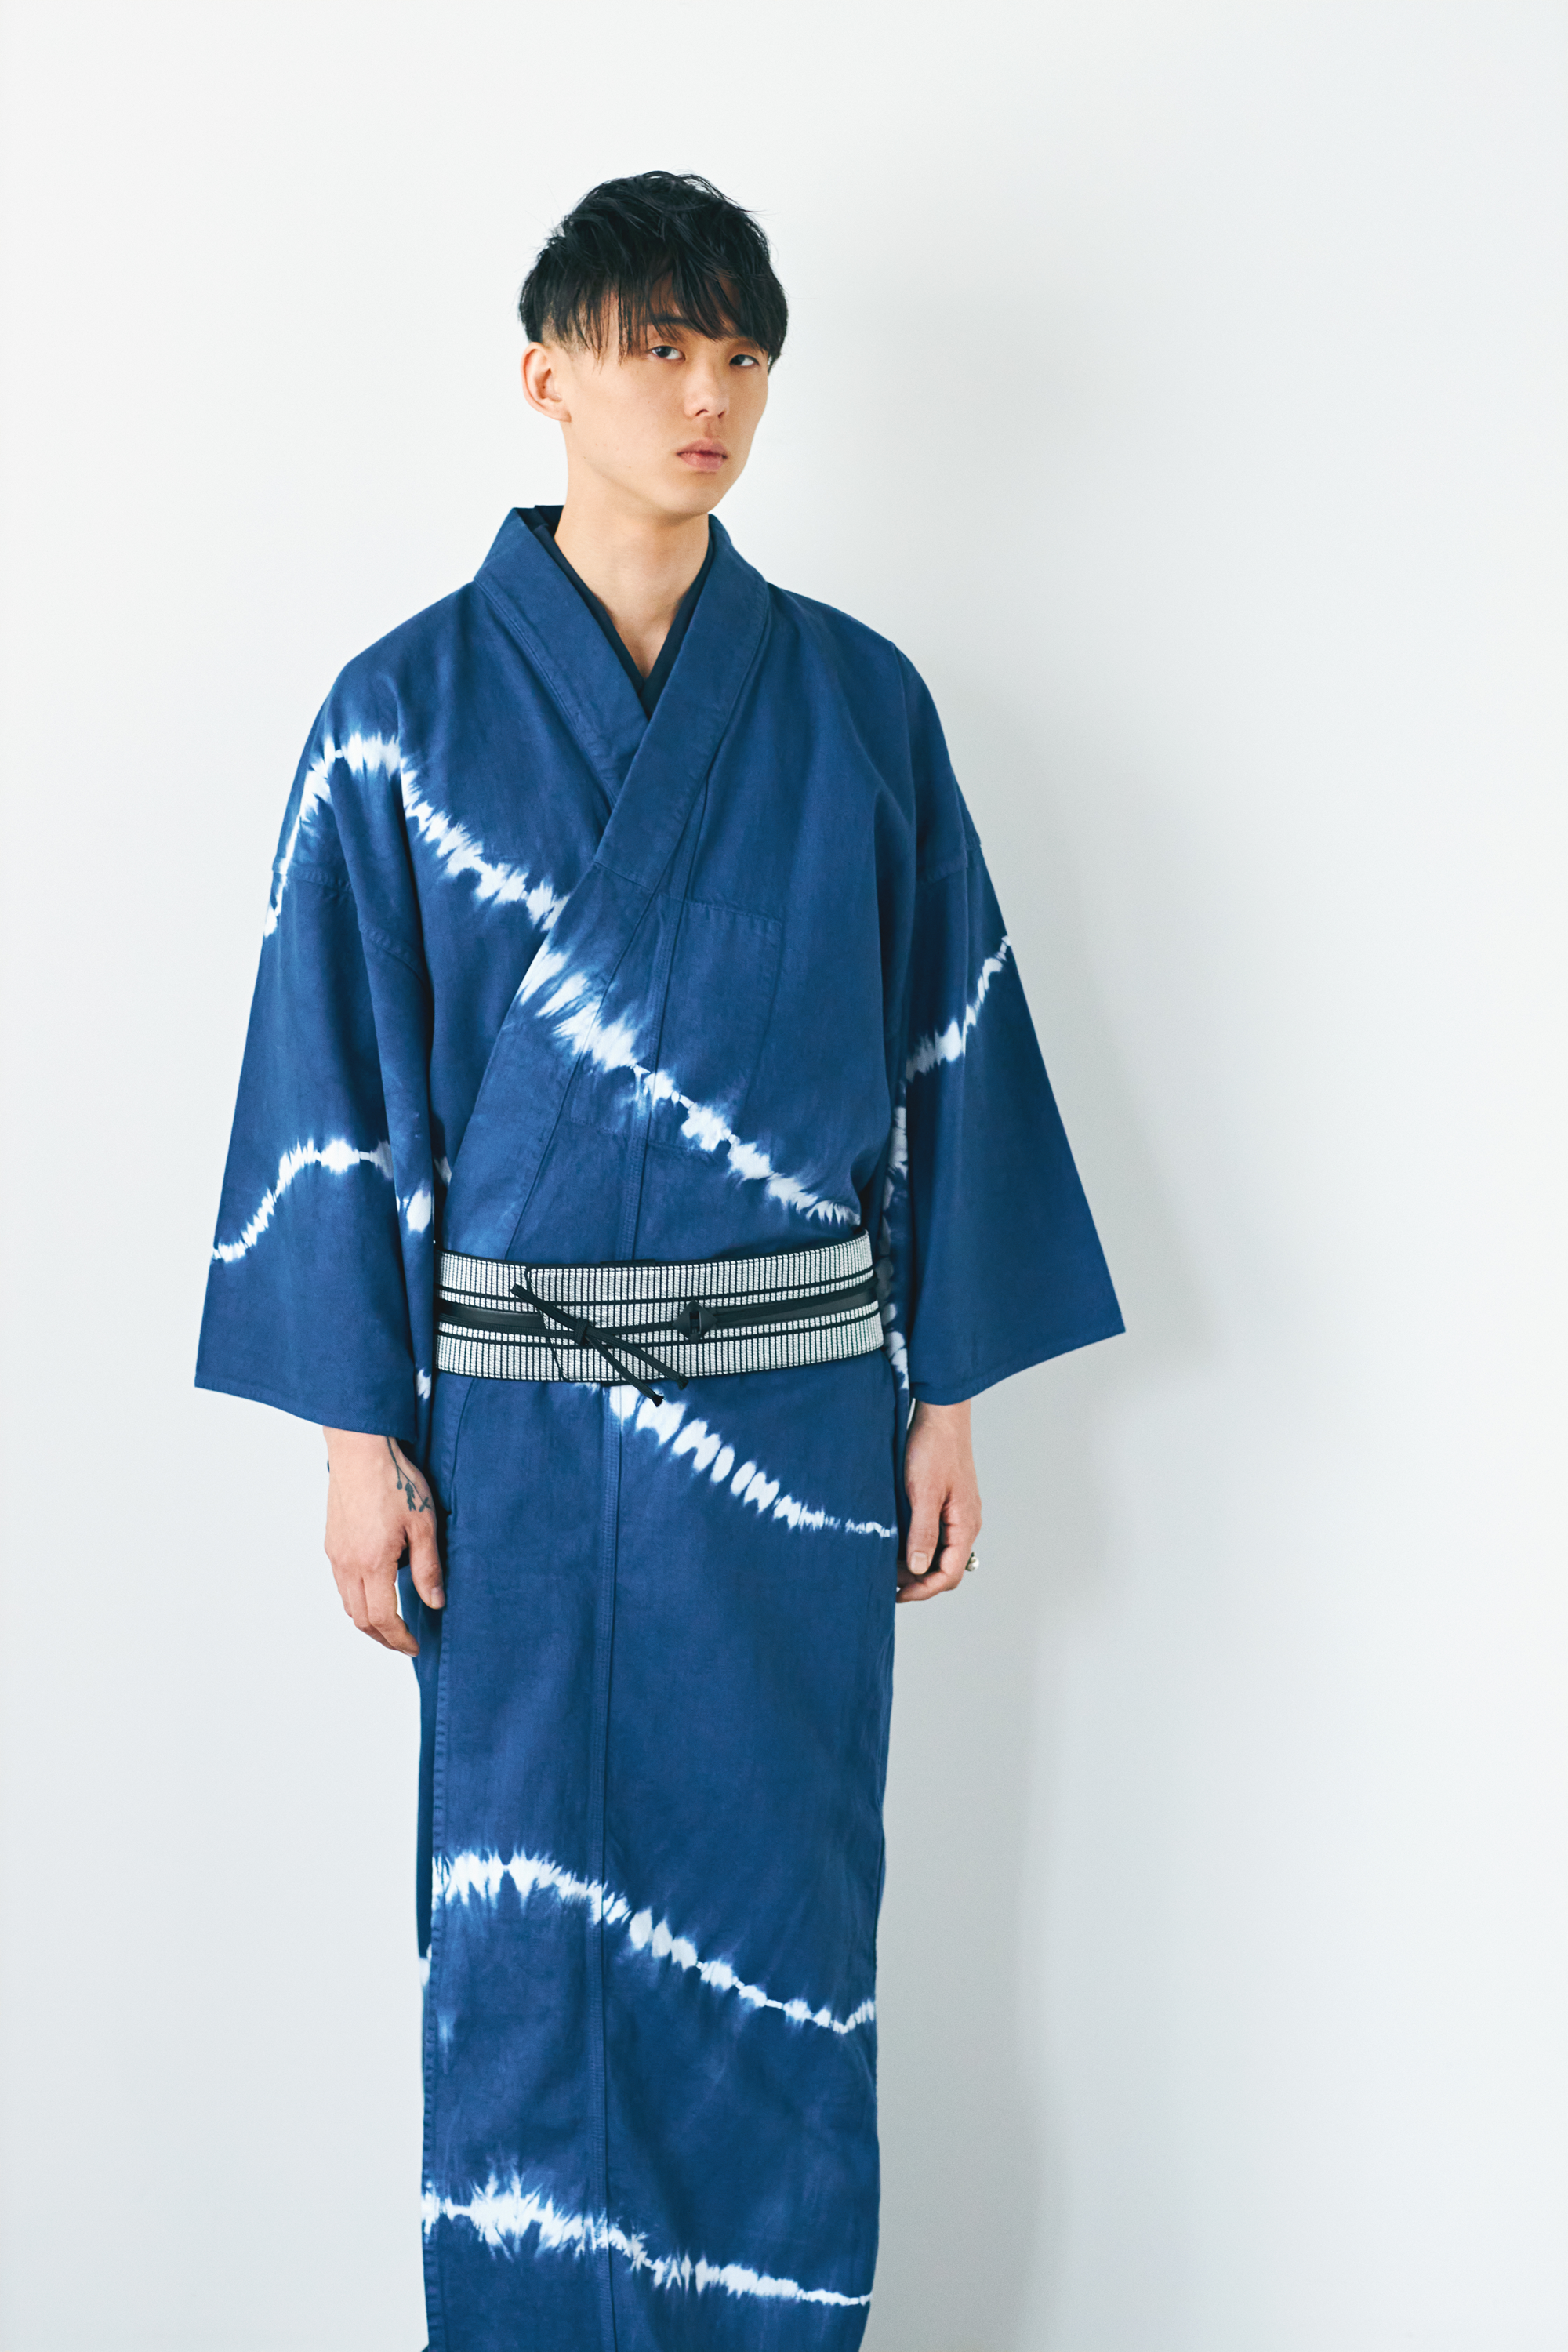 KAPUKI original denim kimono tie dye men's indigo